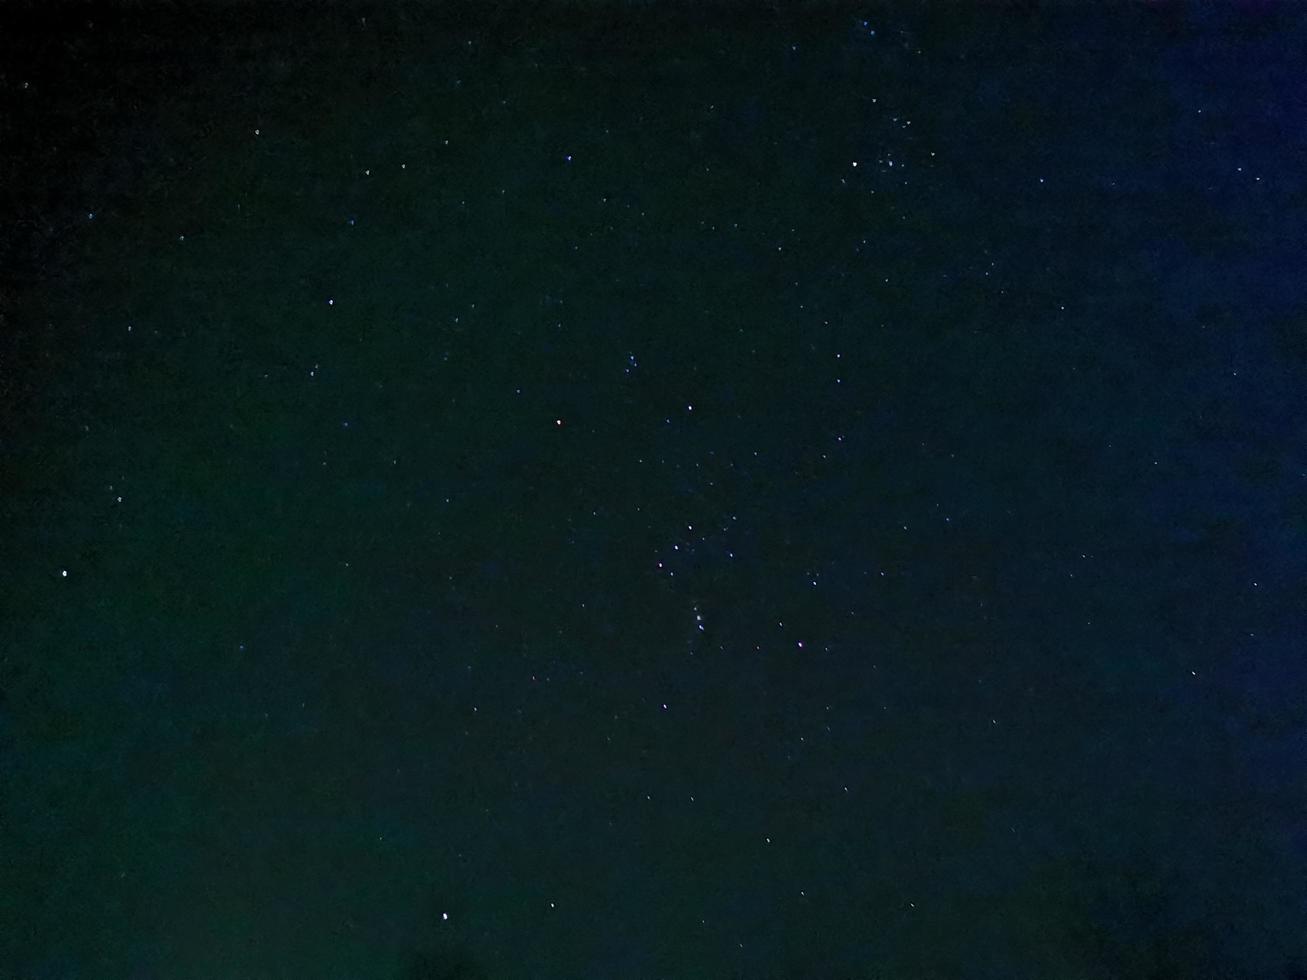 cielo estrellado de invierno nocturno en la constelación de orión foto